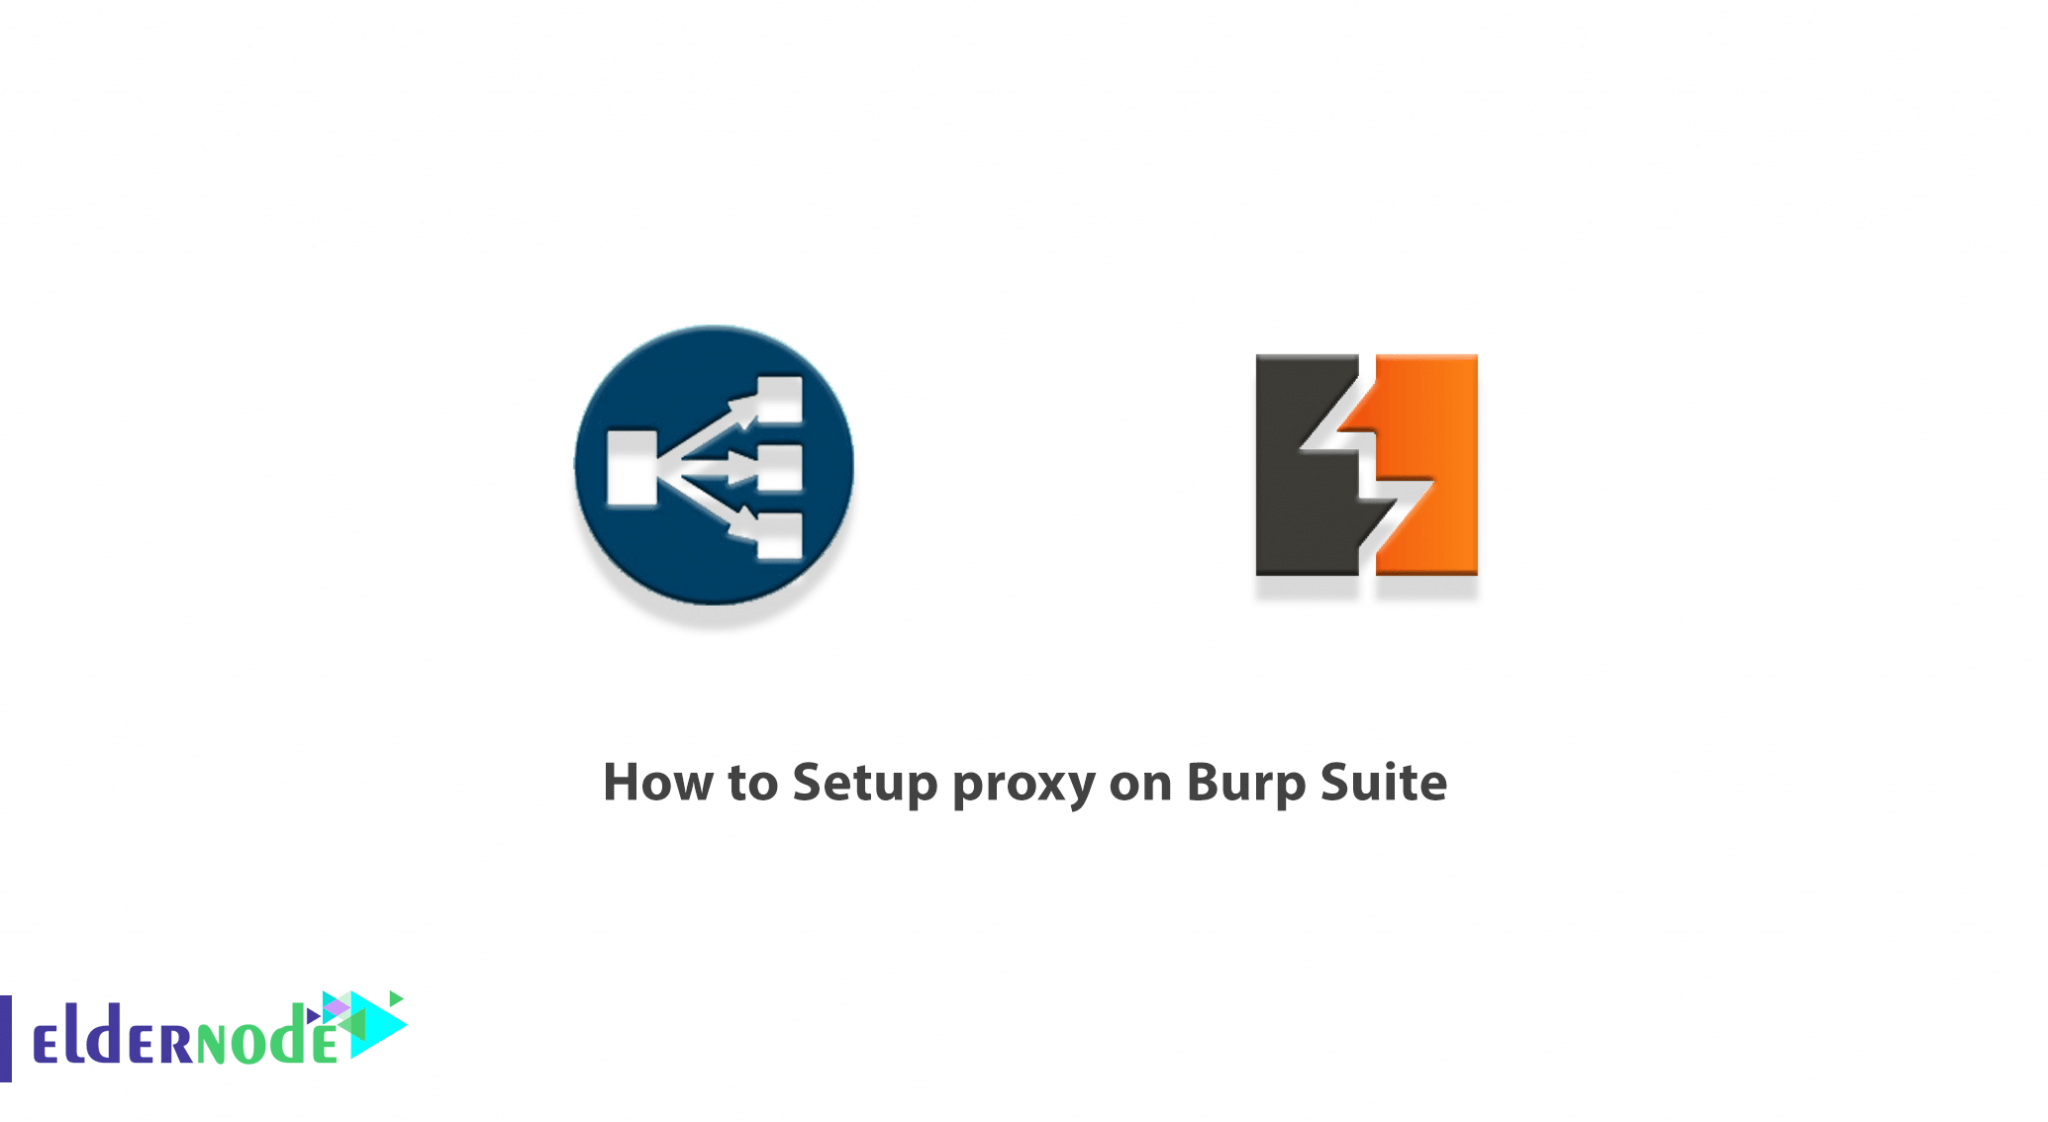 burp suite proxy setup